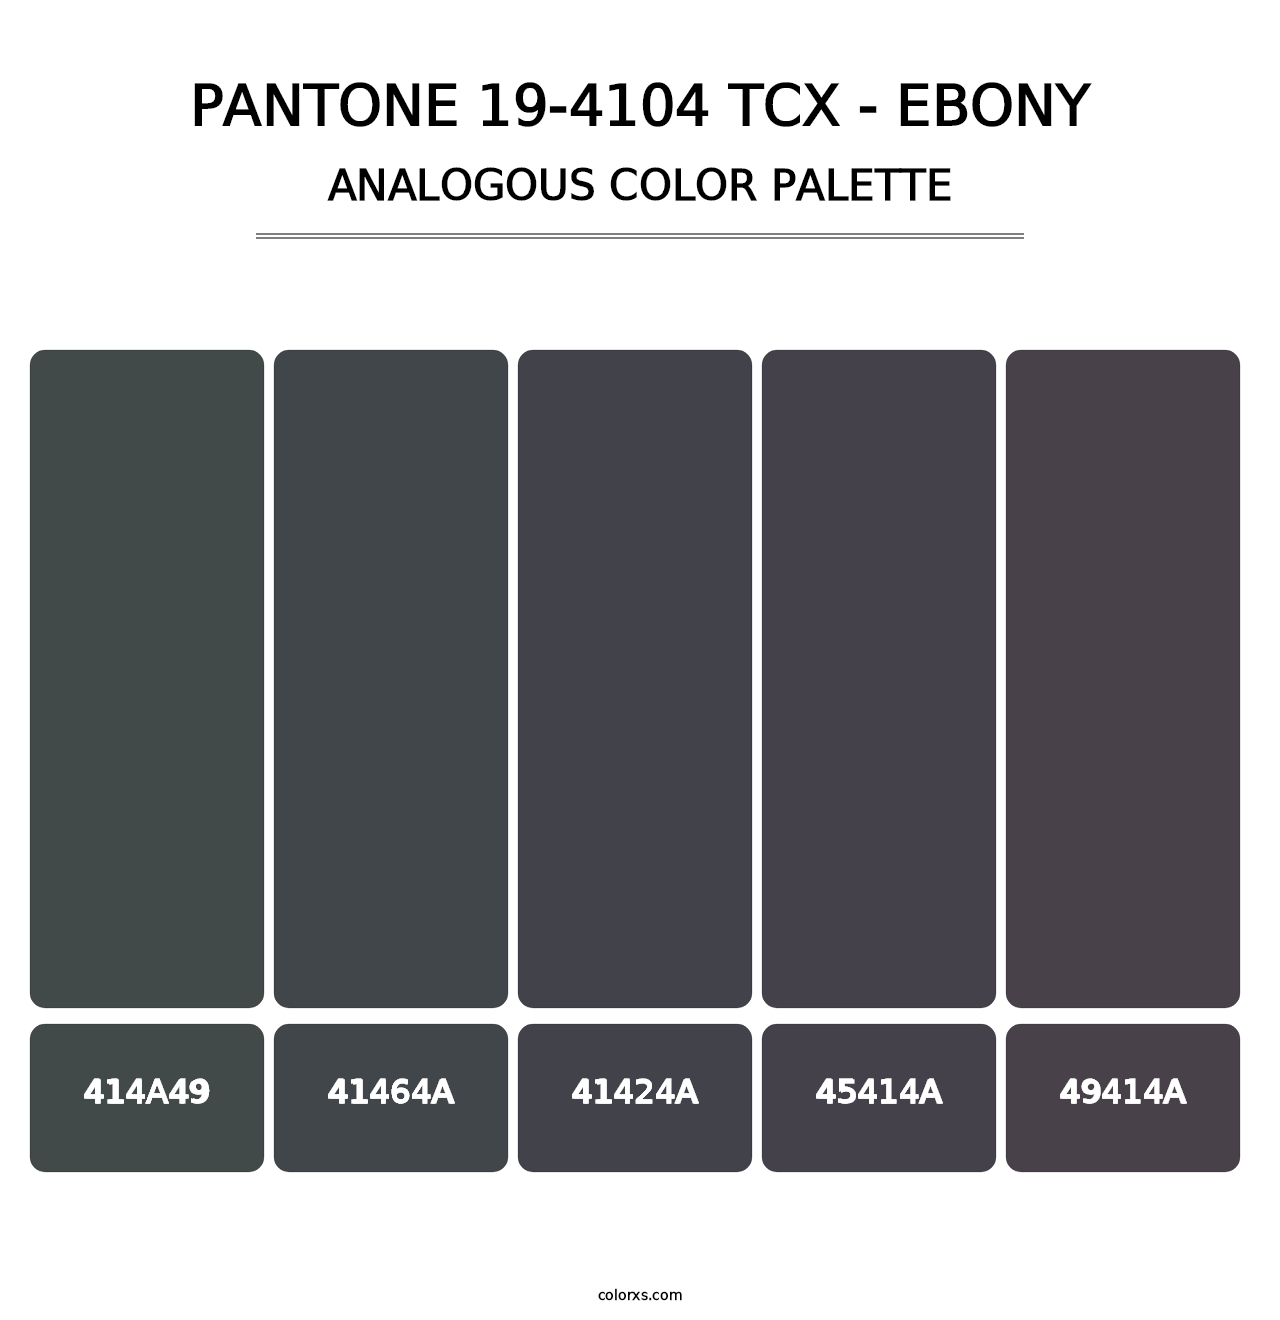 PANTONE 19-4104 TCX - Ebony - Analogous Color Palette